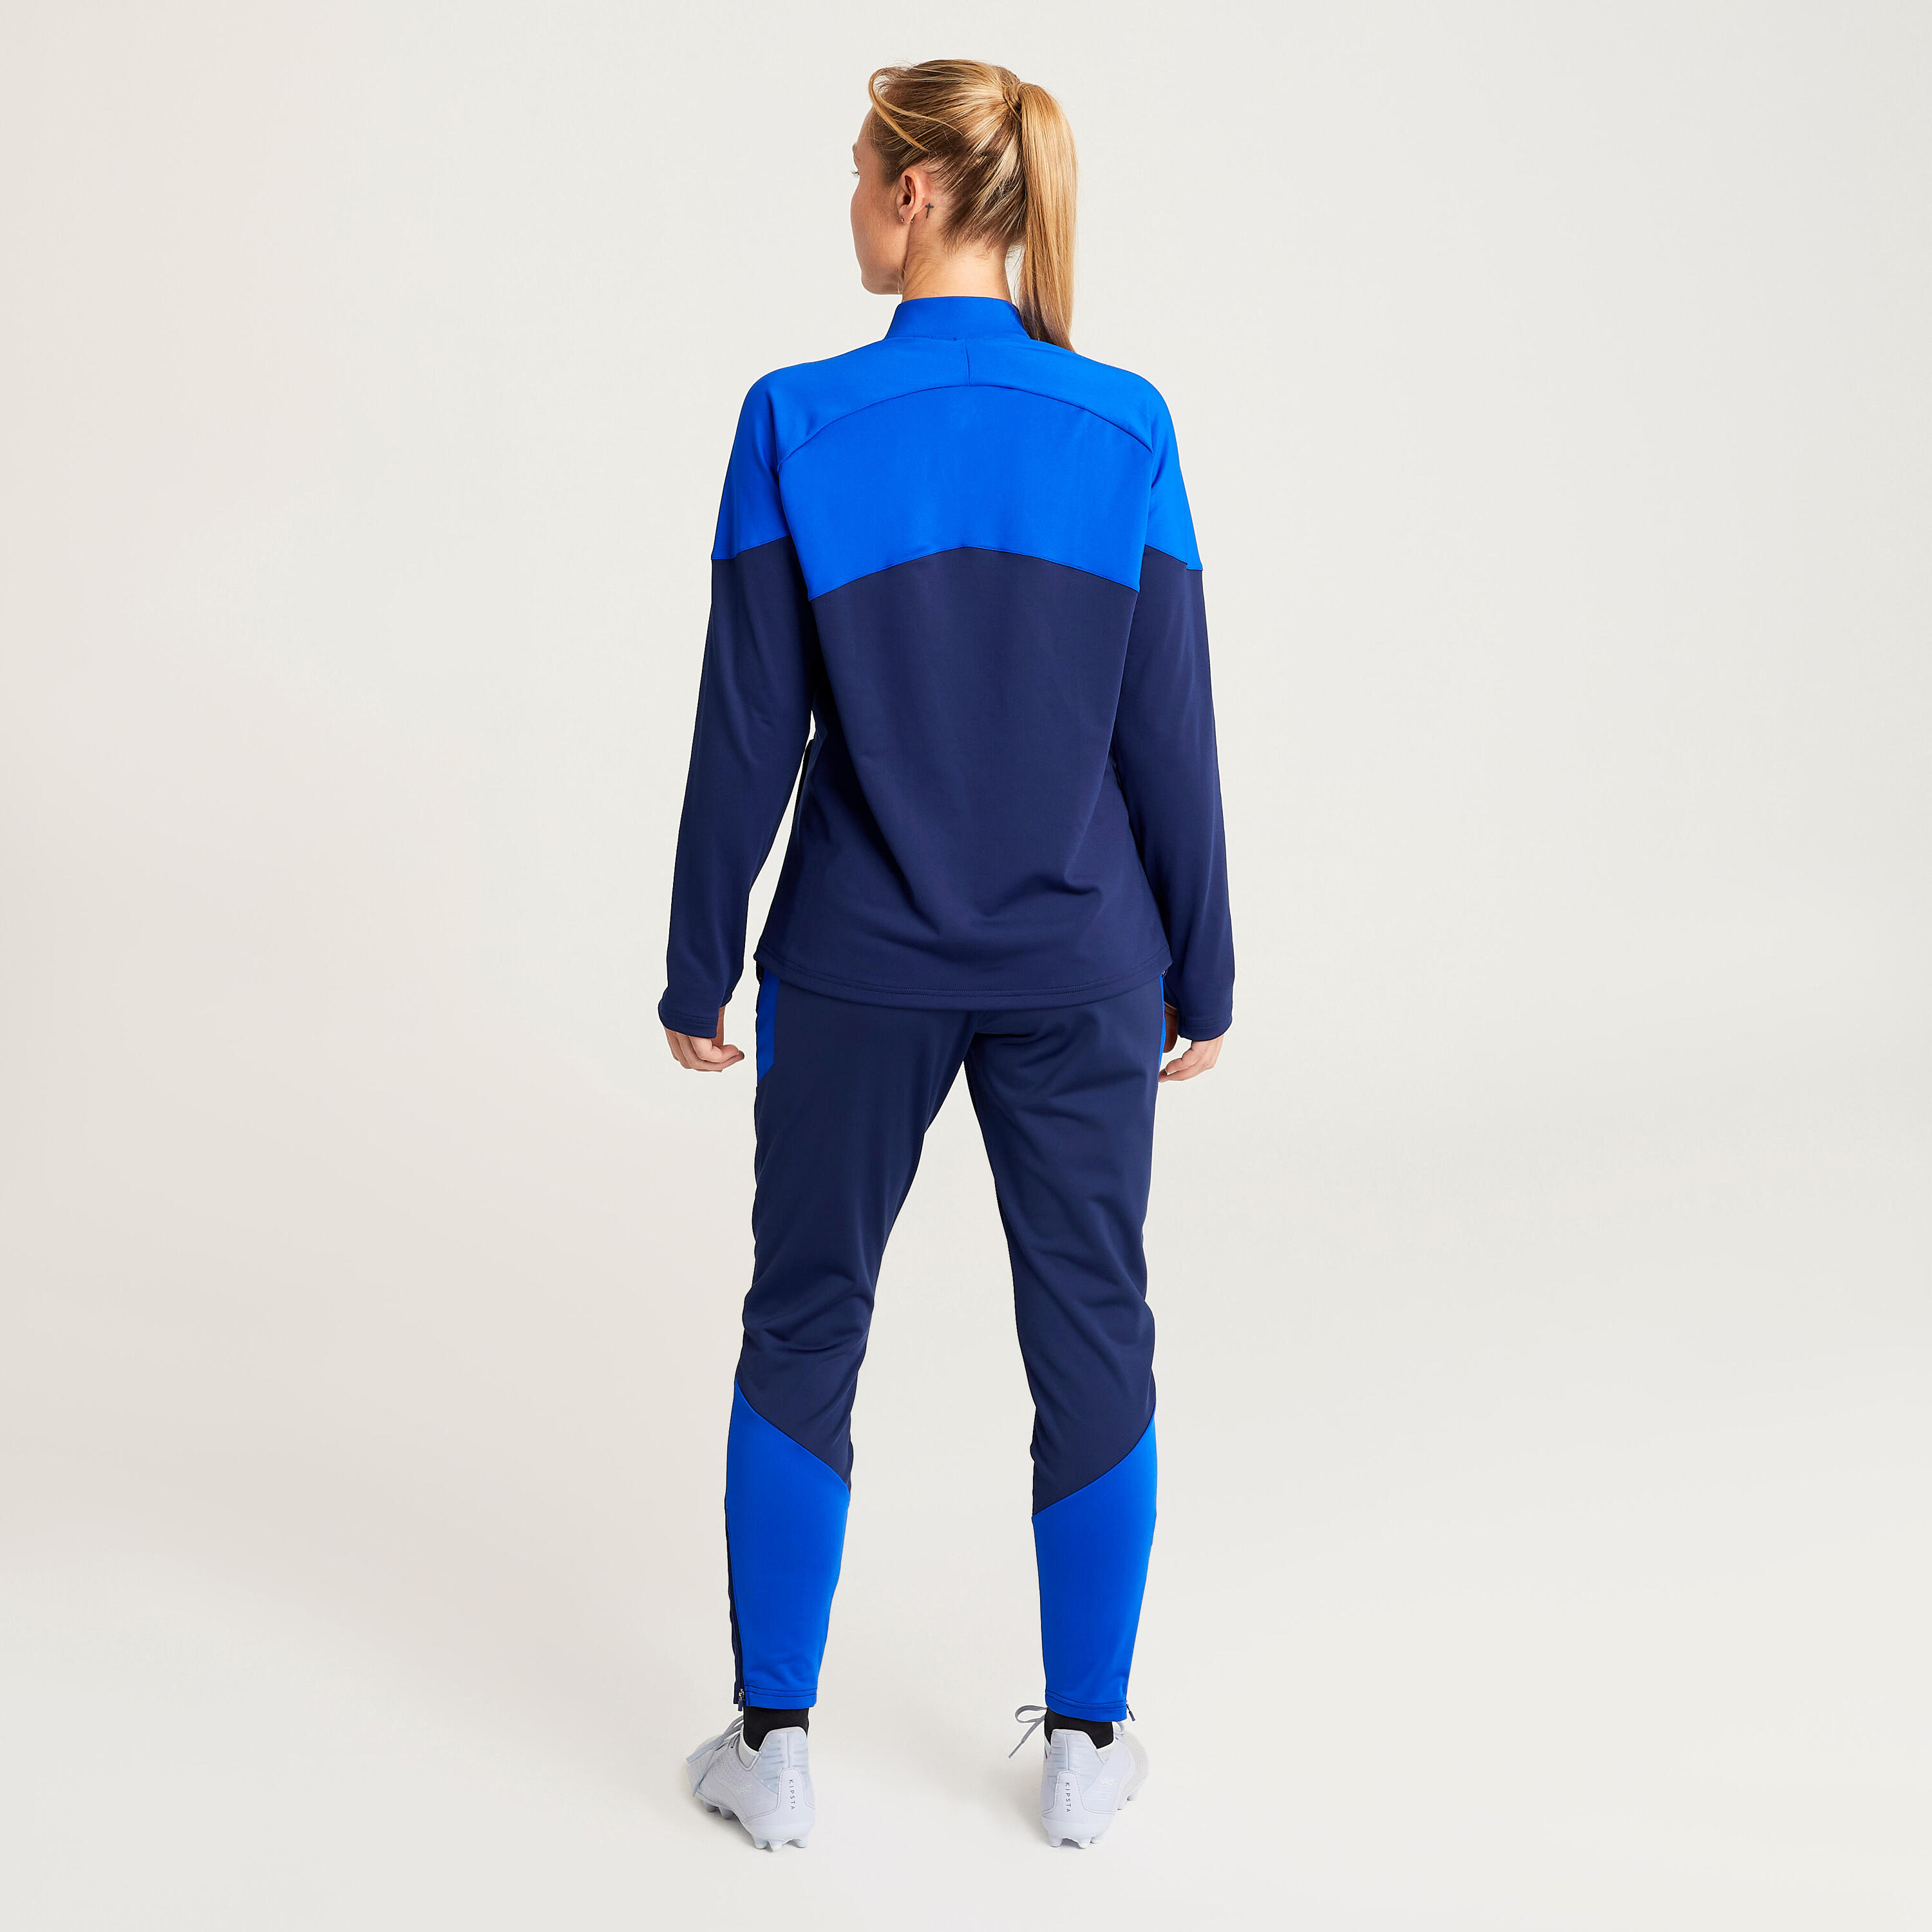 Women's Football Training Bottoms - Blue 7/7